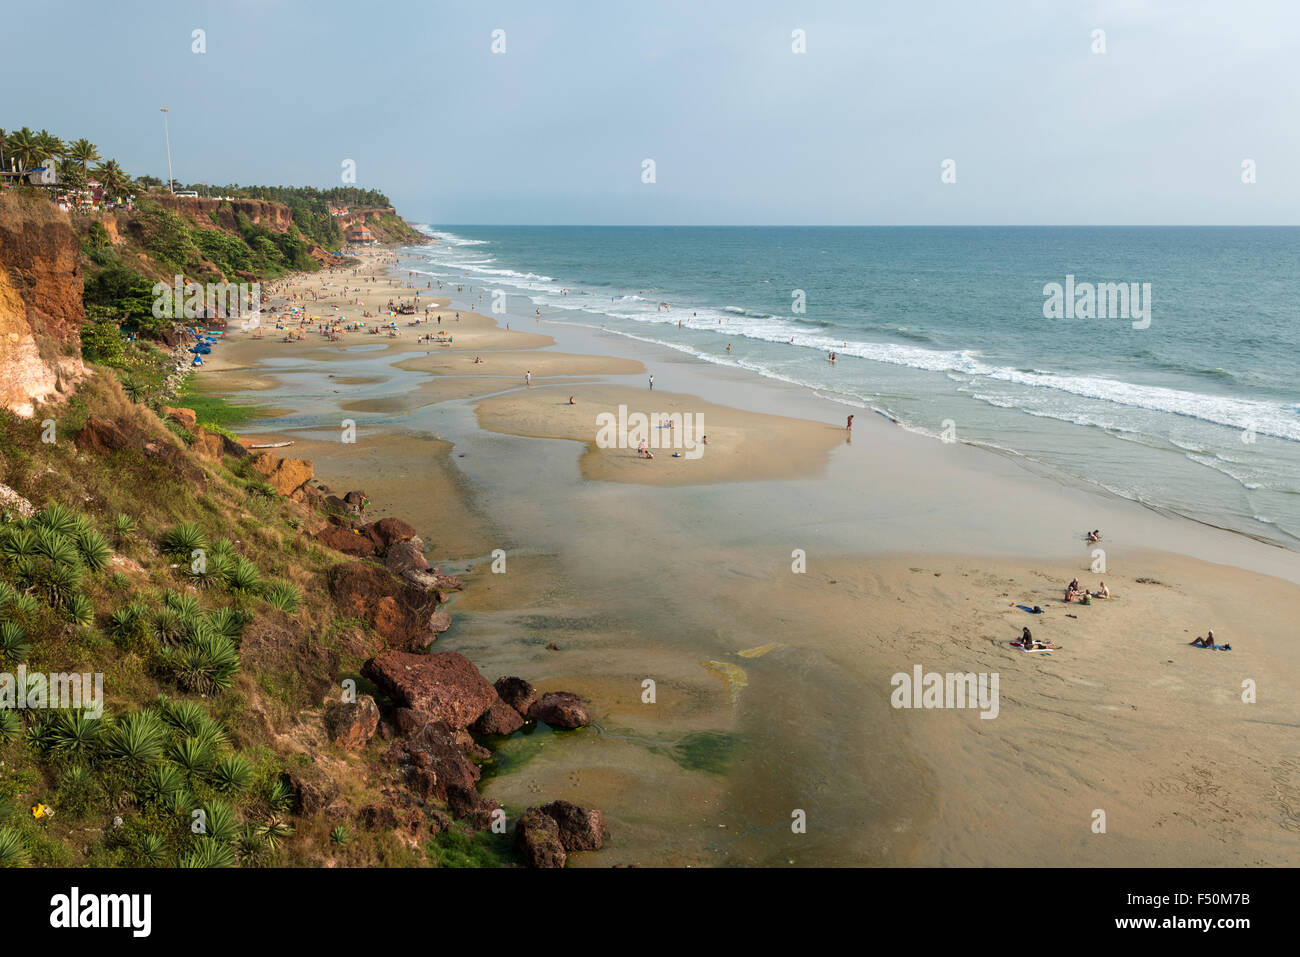 La spiaggia di Varkala con alcuni turisti bagni di sole, rosso scogliere di pietra e mare blu acqua Foto Stock